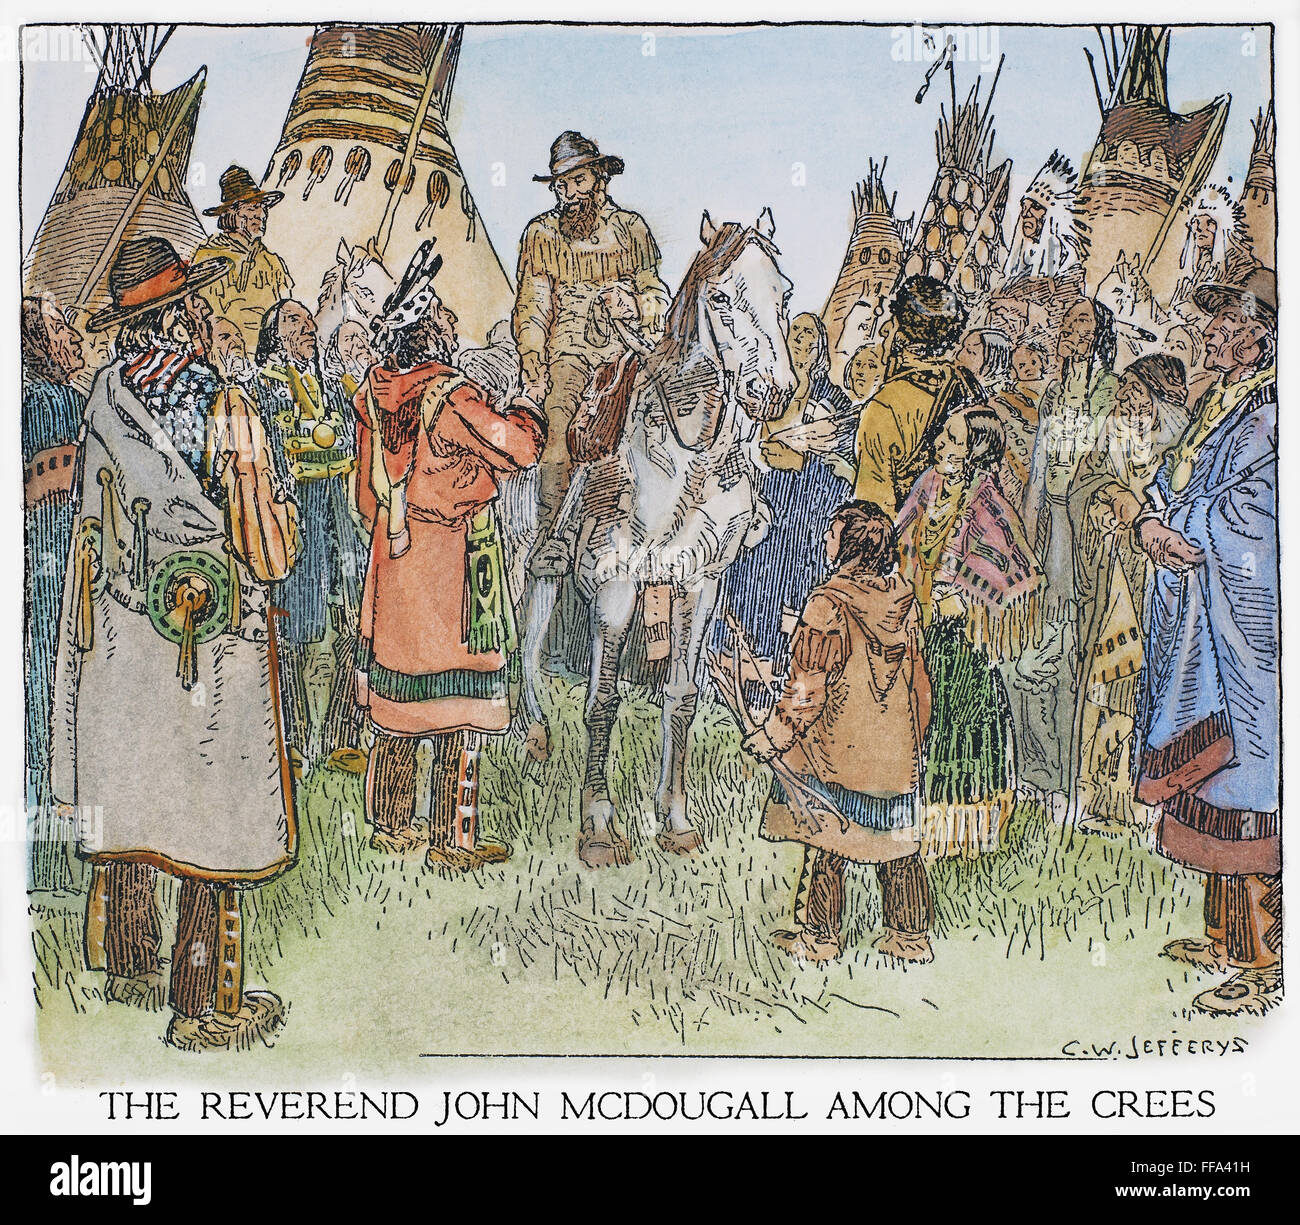 KANADA: MISSIONAR, DER 1870ER JAHRE. /nMethodist Missionar John McDougall unter die Cree-Indianer von Westkanada, Anfang der 1870er Jahre. Zeichnung von c.w. Jefferys. Stockfoto